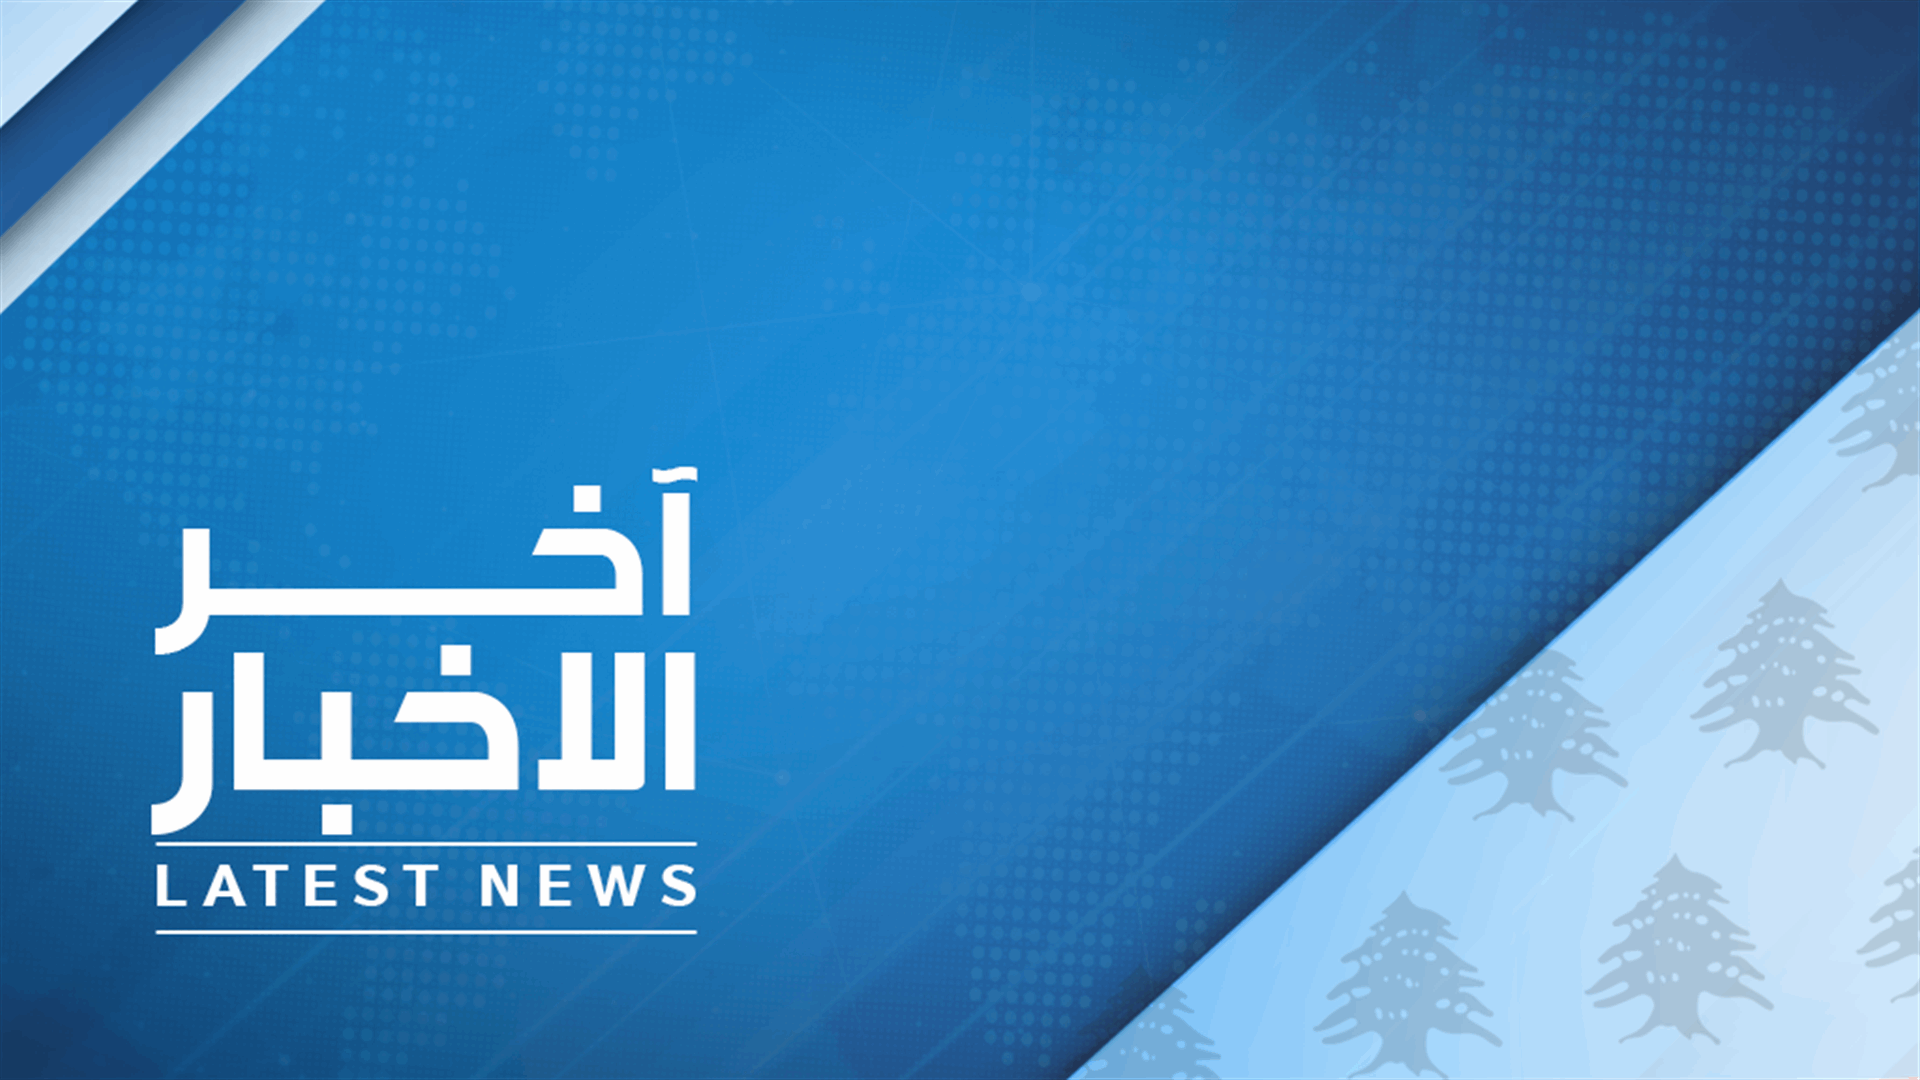 النائب علي حسن خليل: ليس هناك أي قرار بعدم الدعوة لجلسة لإنتخاب رئيس للجمهورية وممكن أن يدعو الرئيس بري الى جلسة الأسبوع المقبل